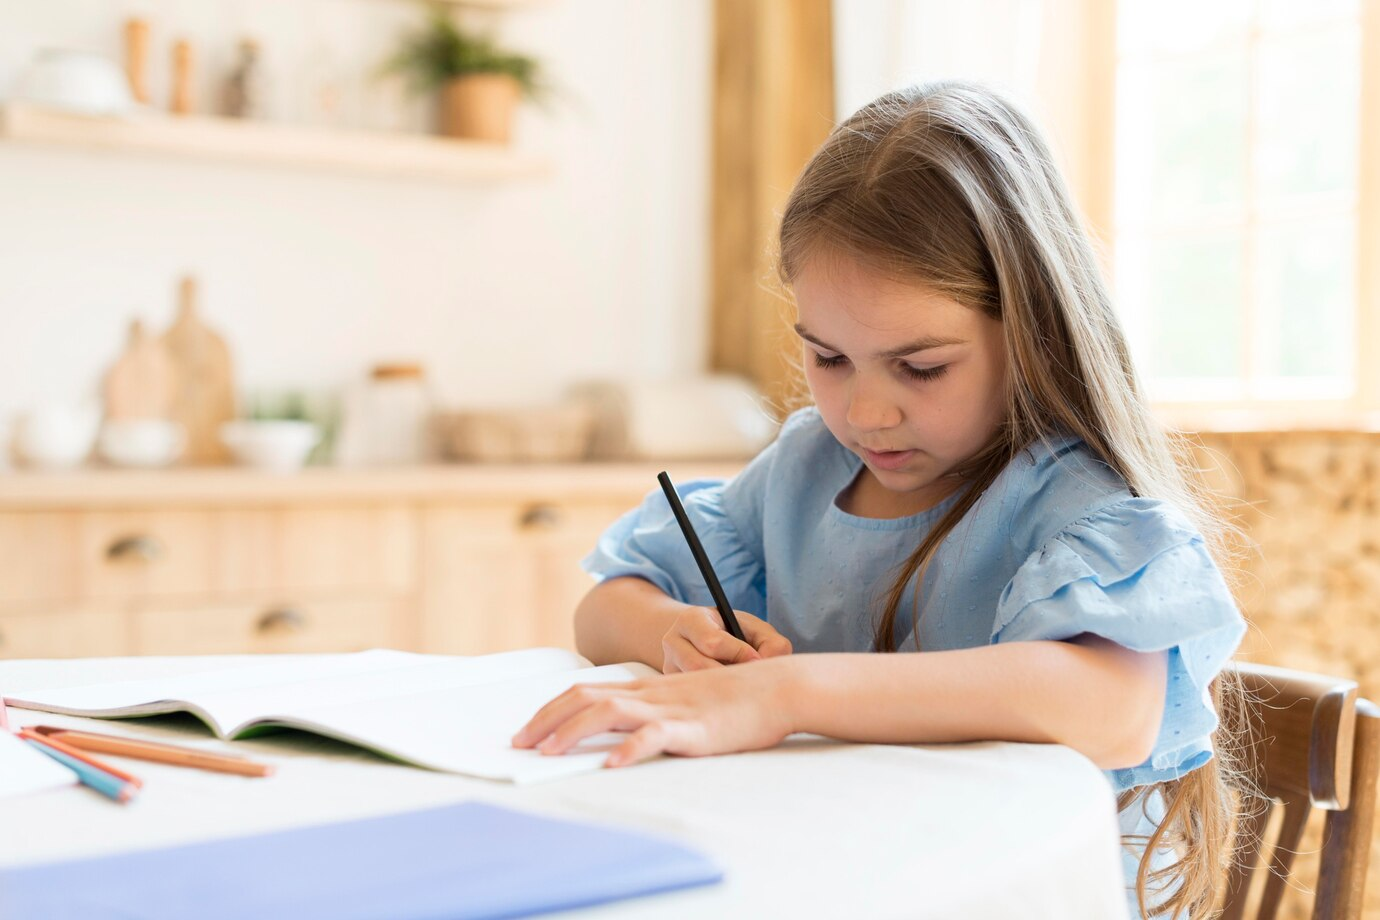 A little girl writing an essay